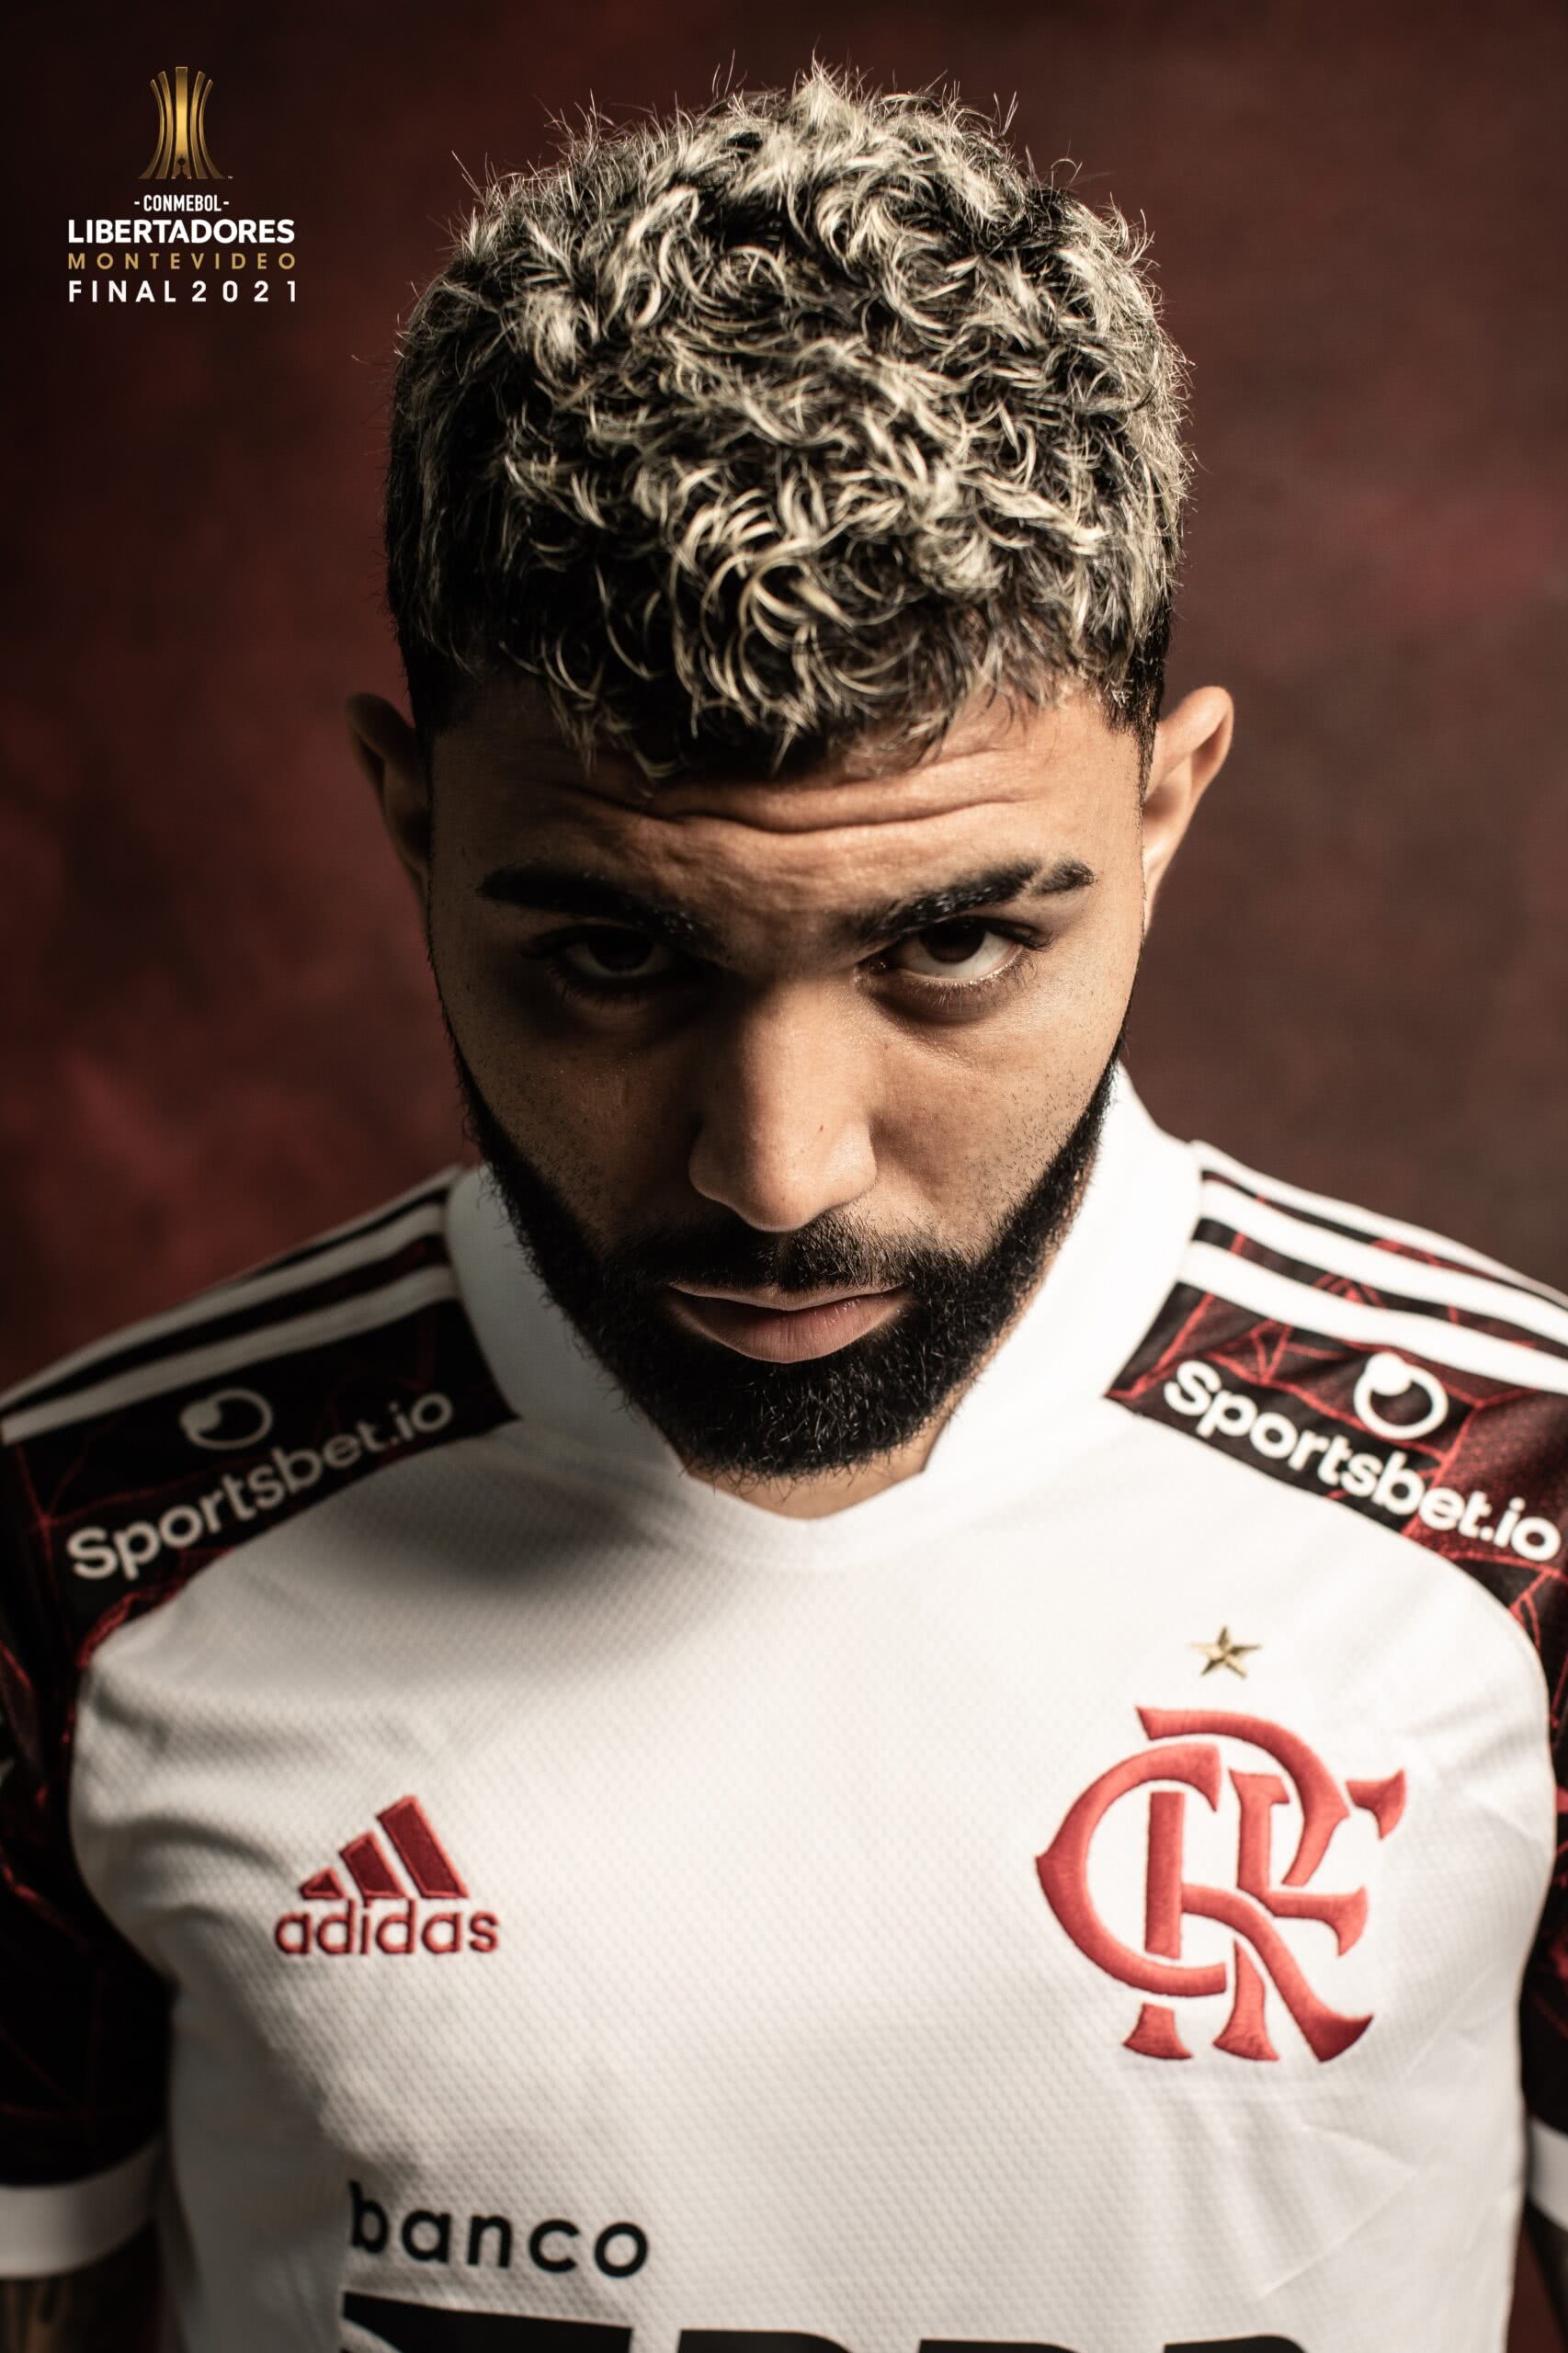 Flamengo: Nem tudo no ano de 2021 foi perdido